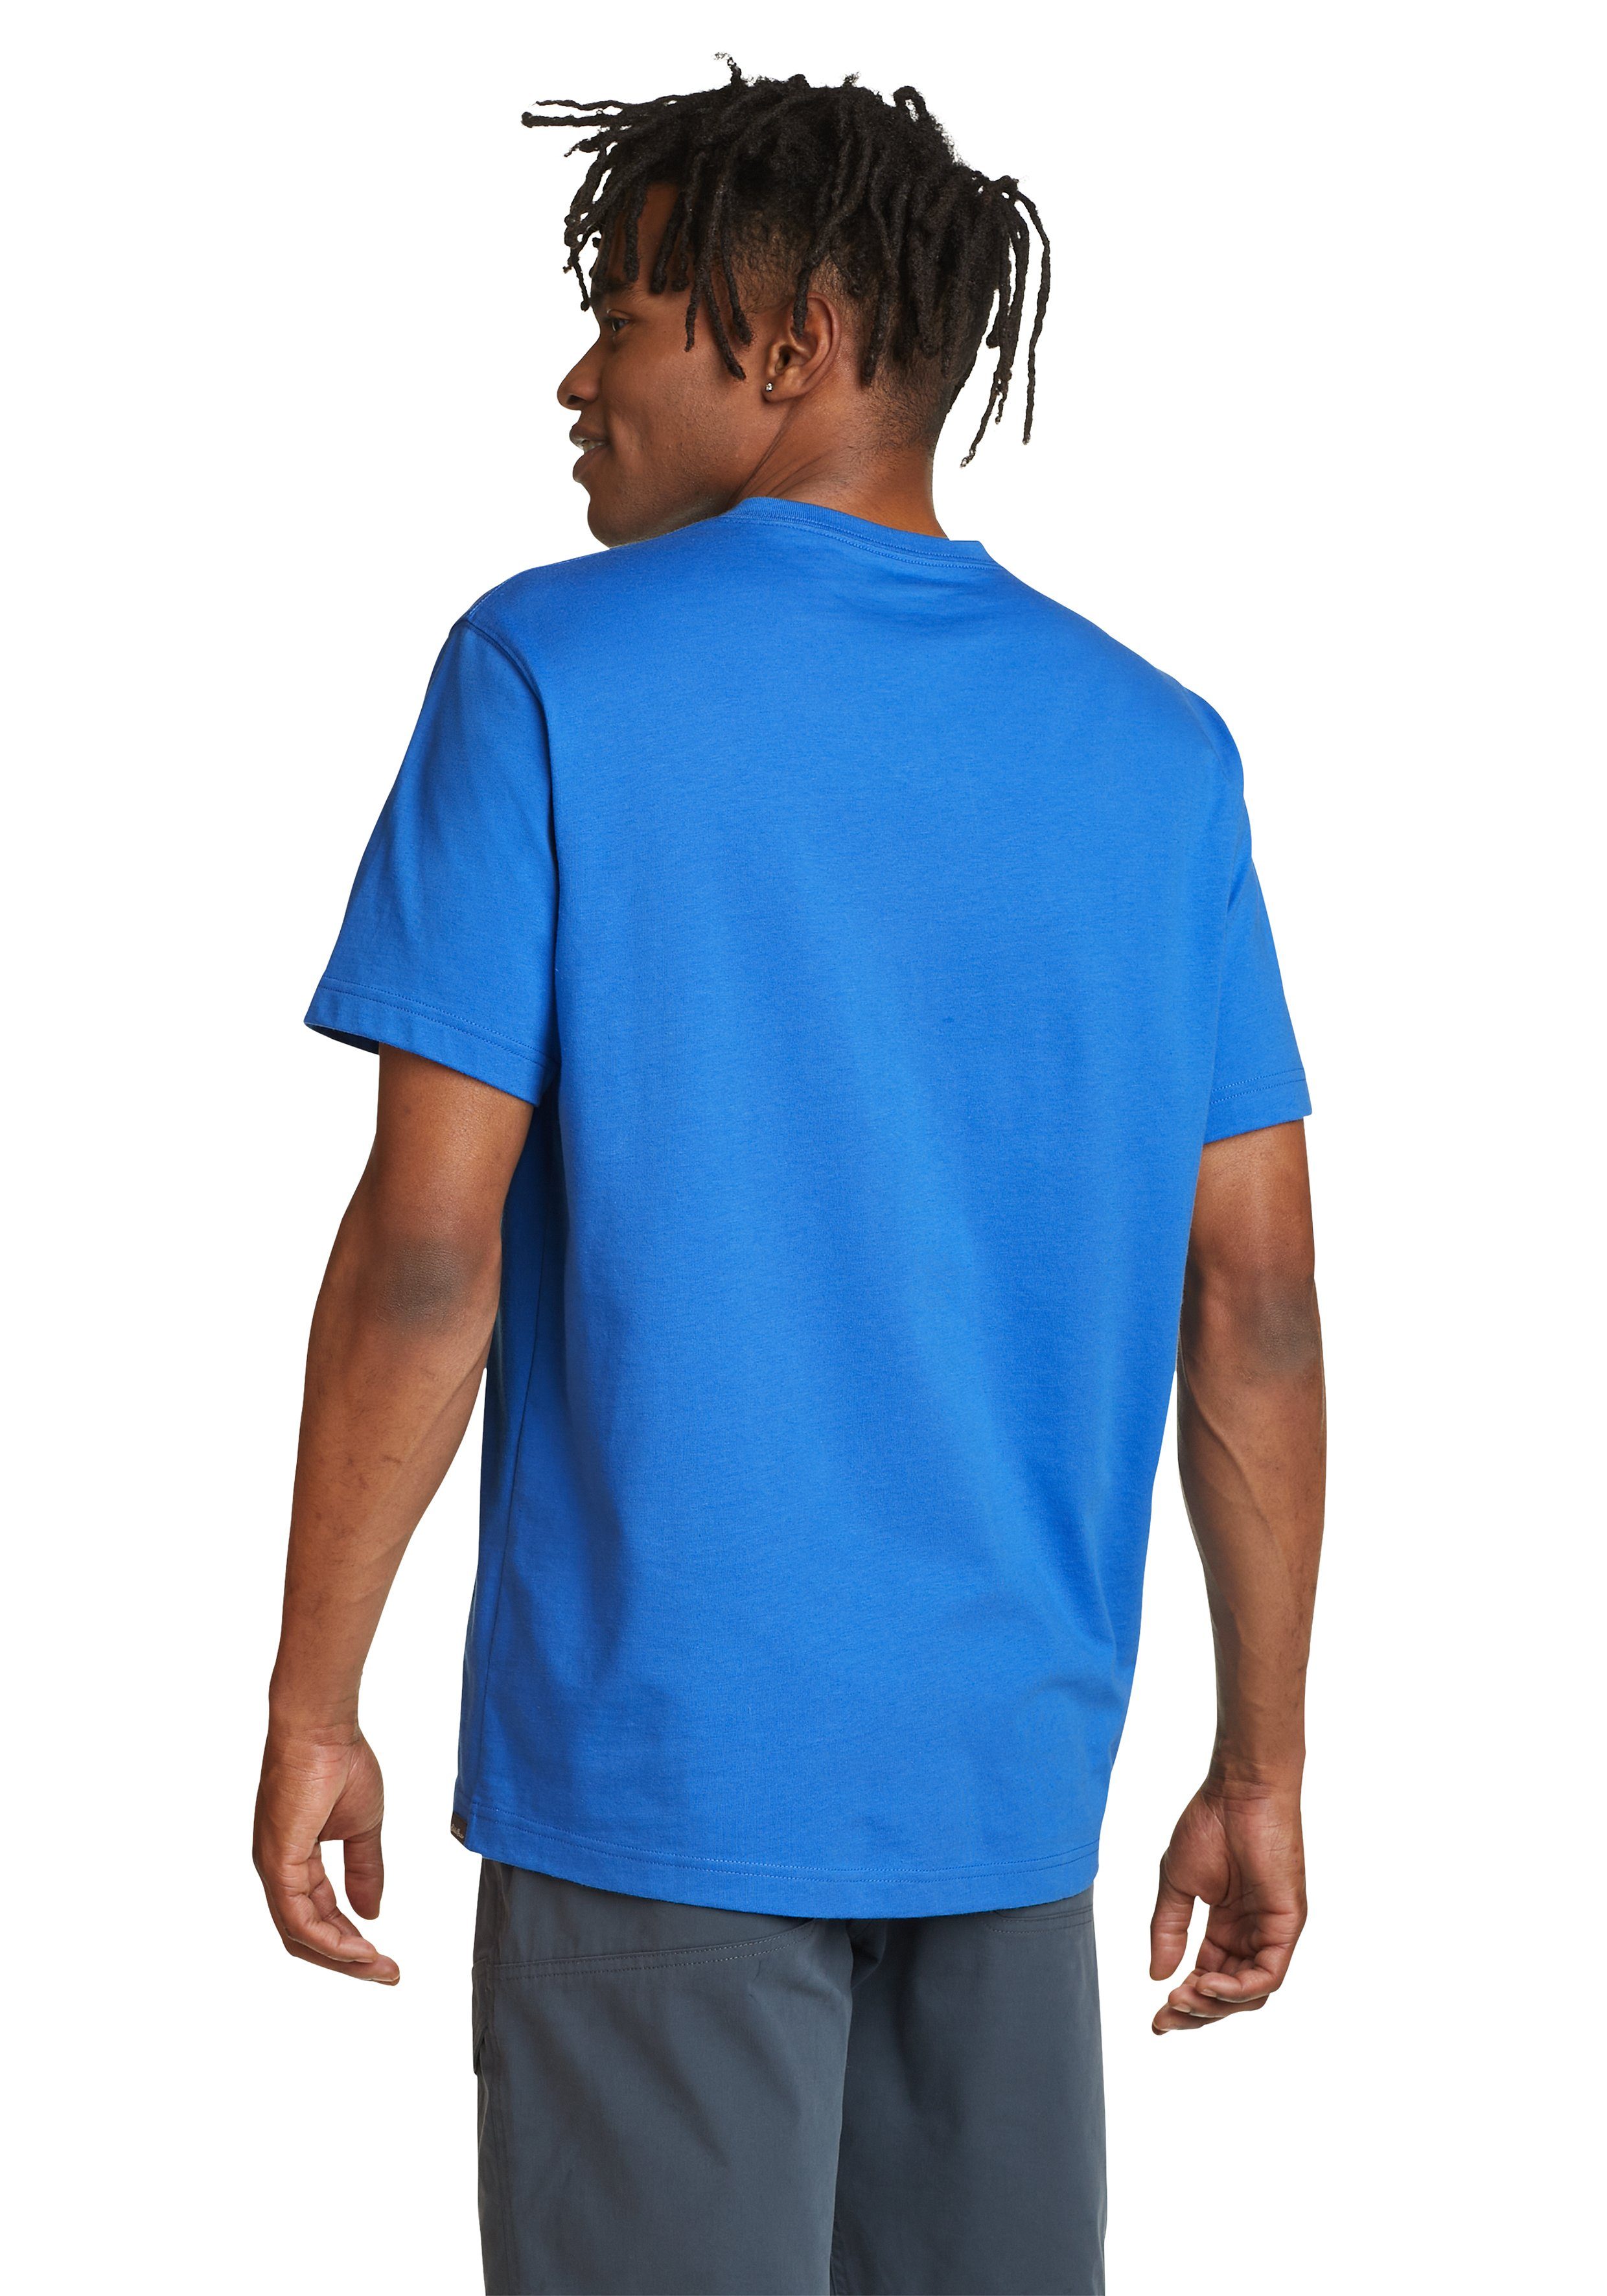 100% Pro Baumwolle Brilliantes Wash T-Shirt Shirt V-Ausschnitt Blau Bauer Eddie - Legend